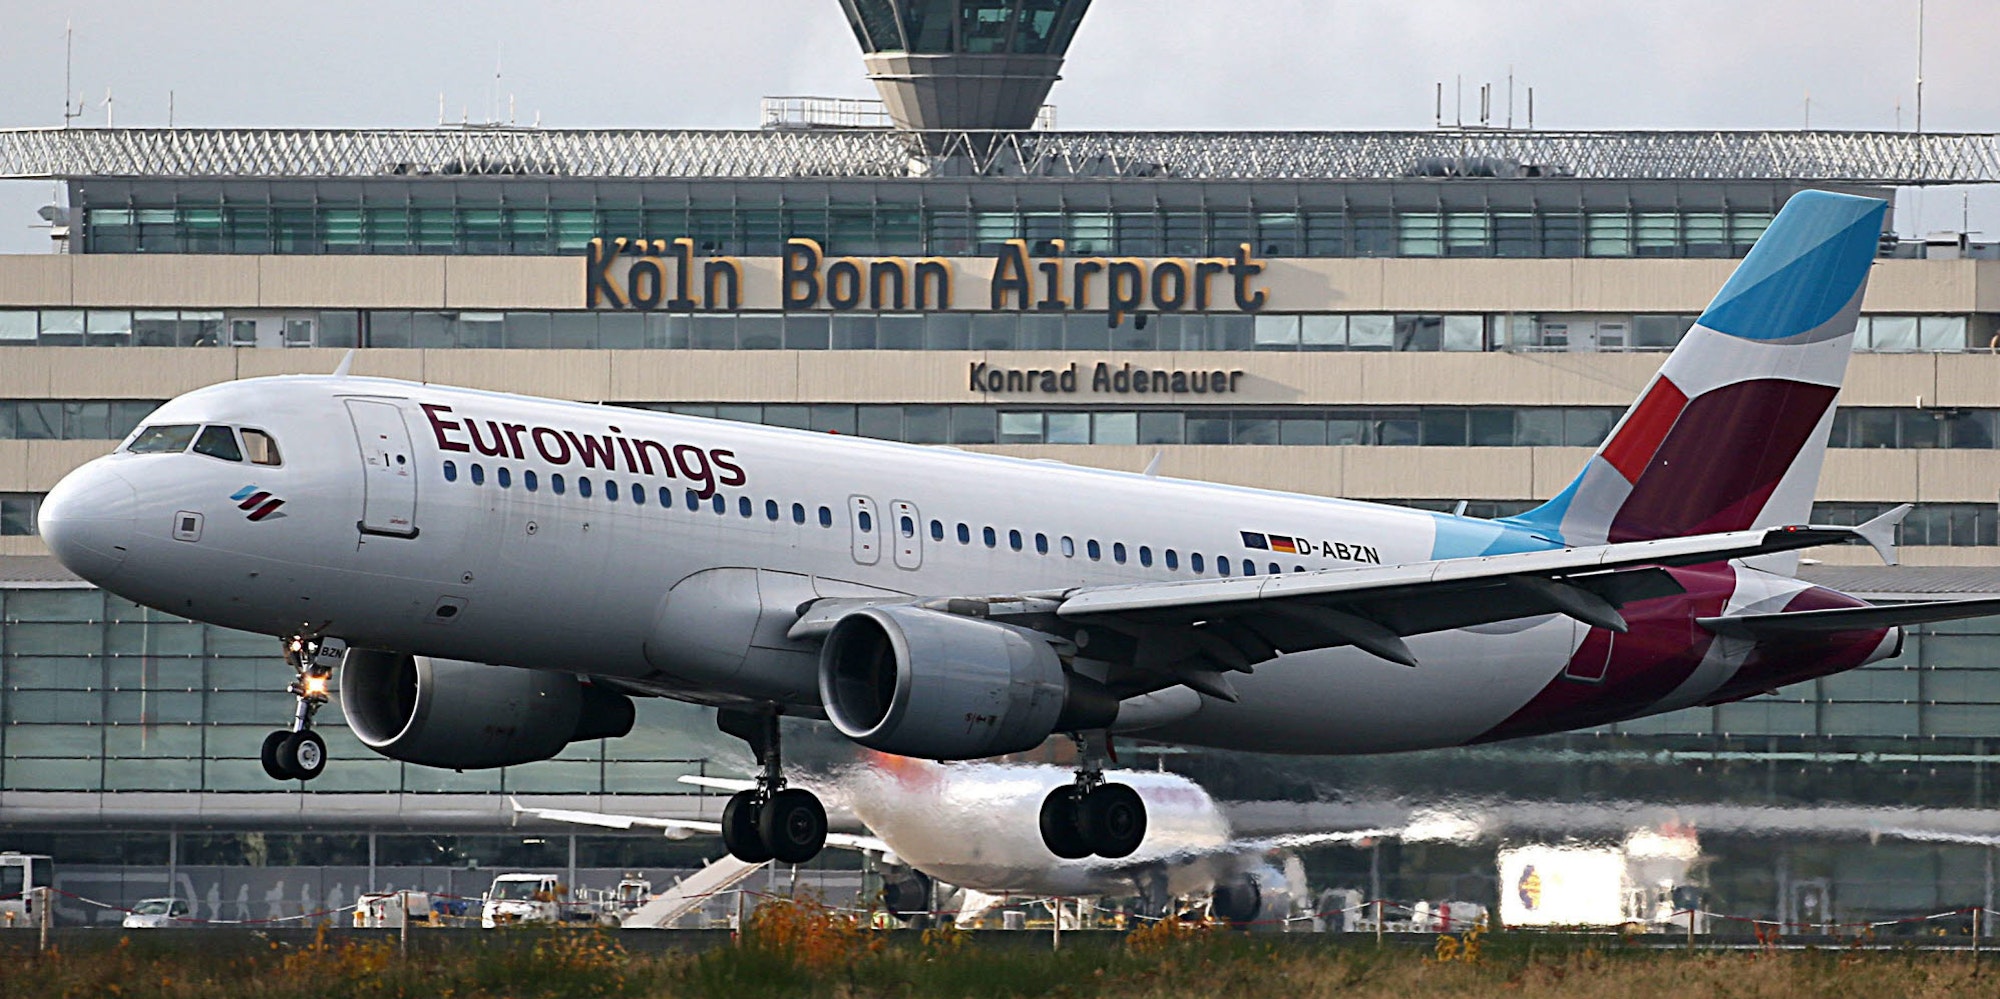 Ein Eurowings-Flieger vor dem Flughafen Köln/Bonn